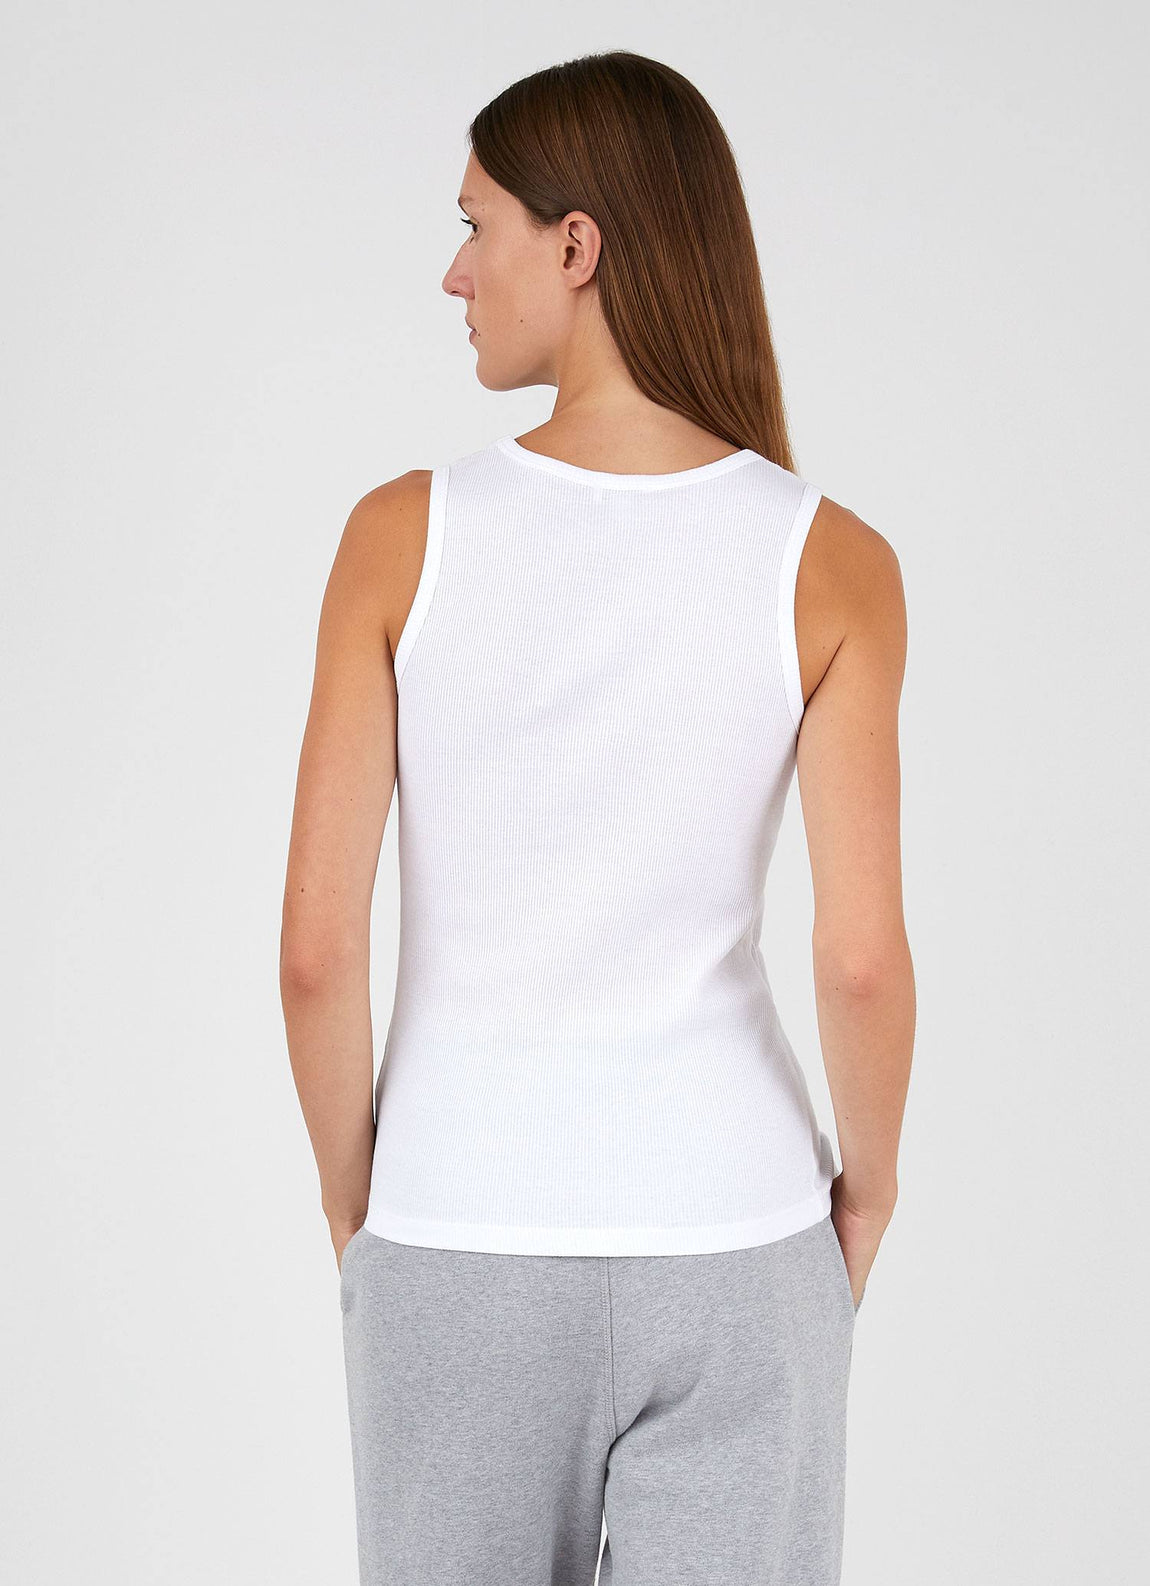 Women's Rib Vest in White